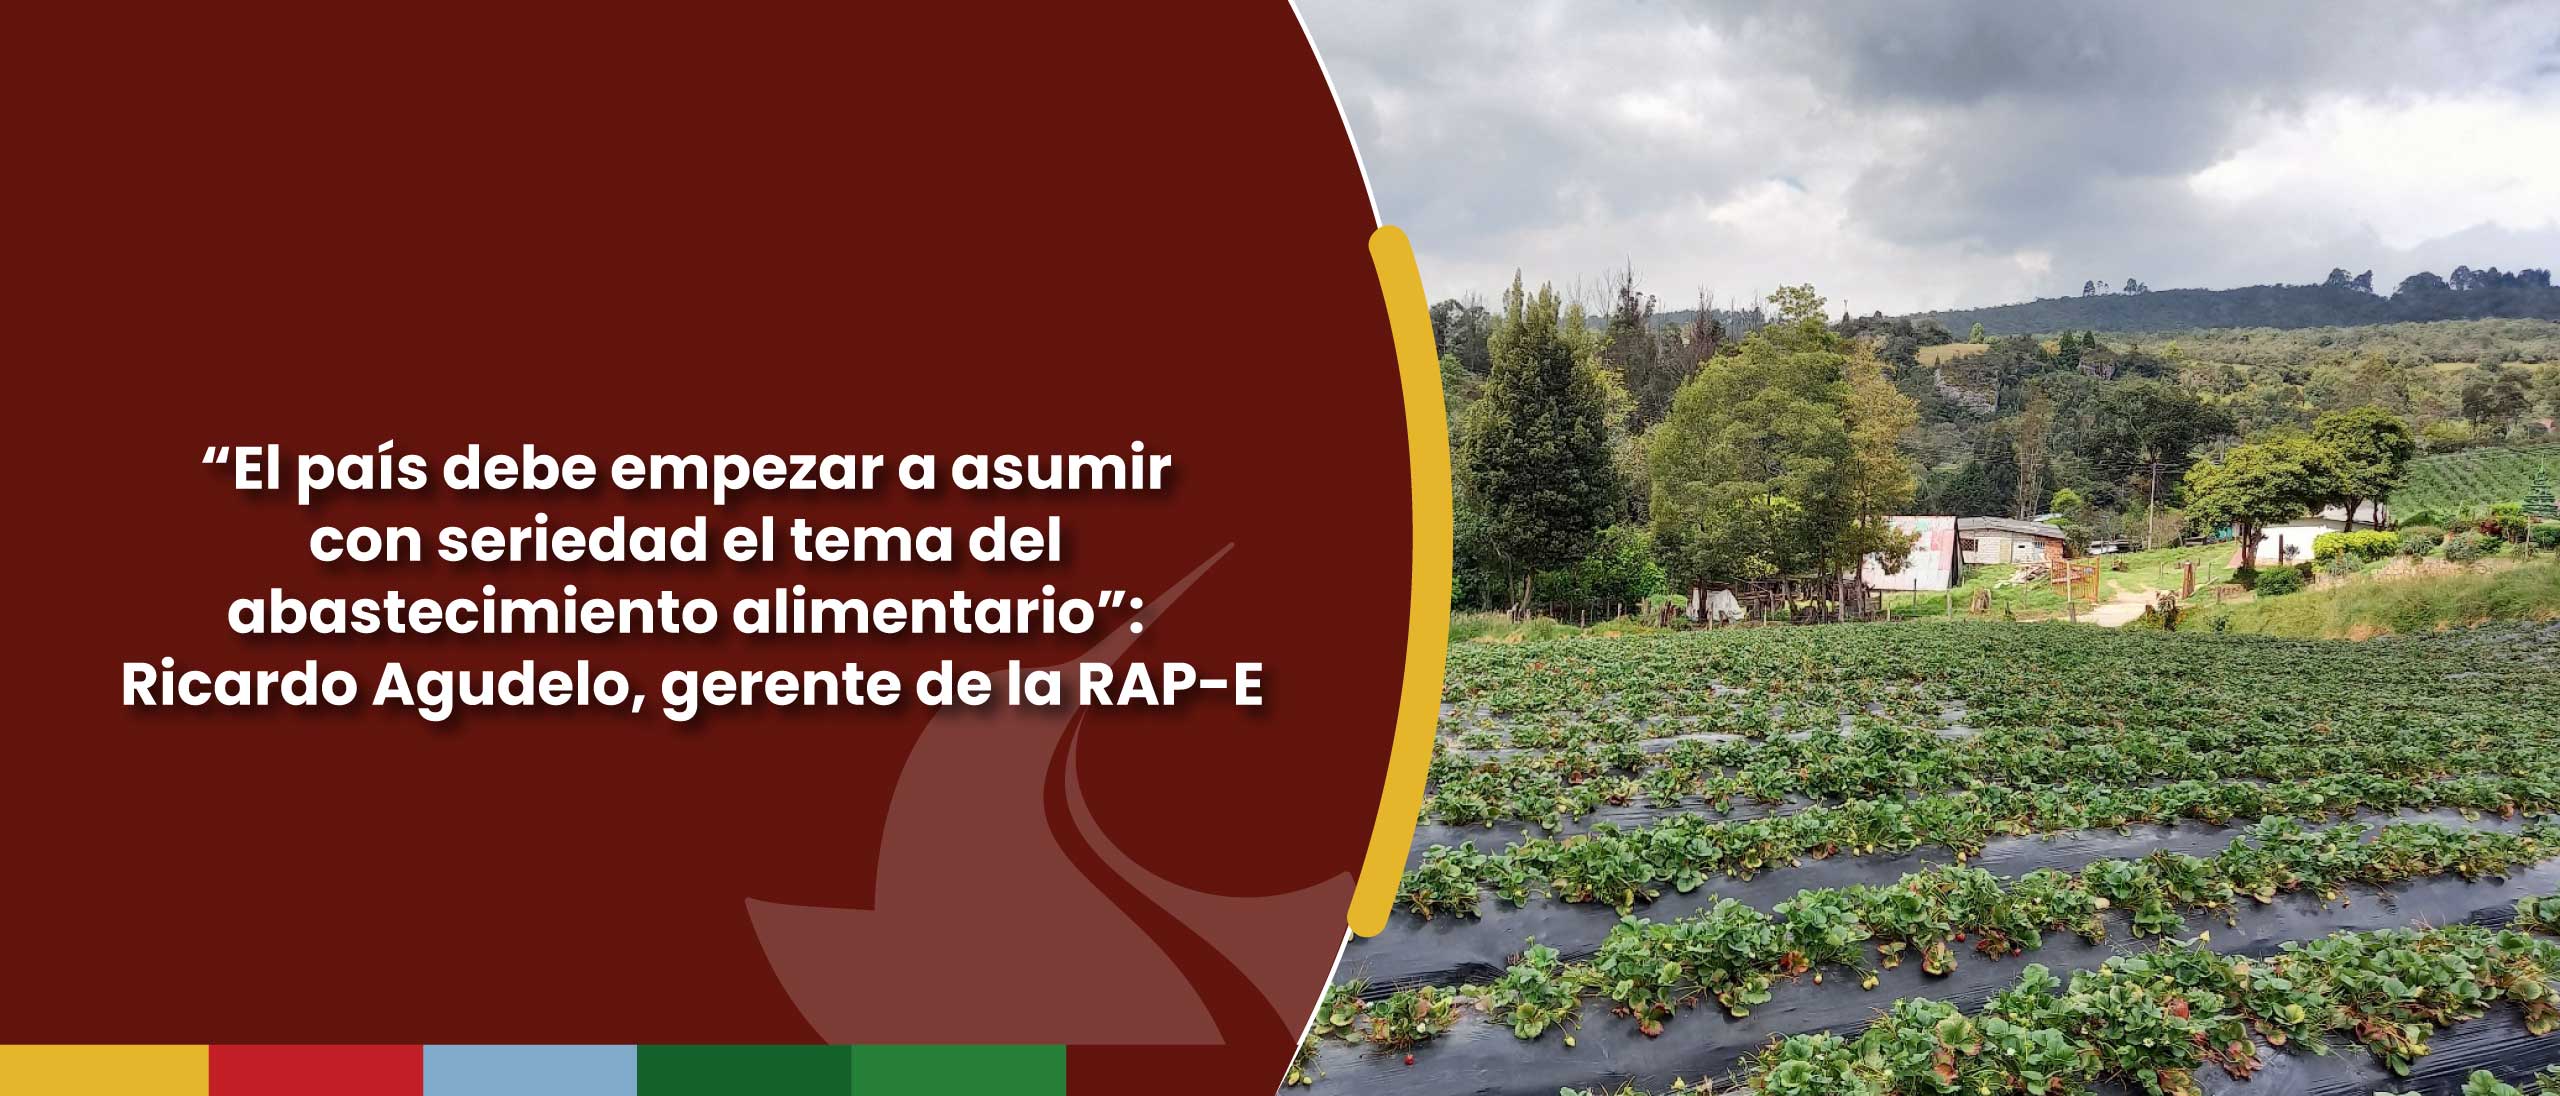 “El país debe empezar a asumir con seriedad el tema del abastecimiento alimentario”: Ricardo Agudelo, gerente de la RAP-E